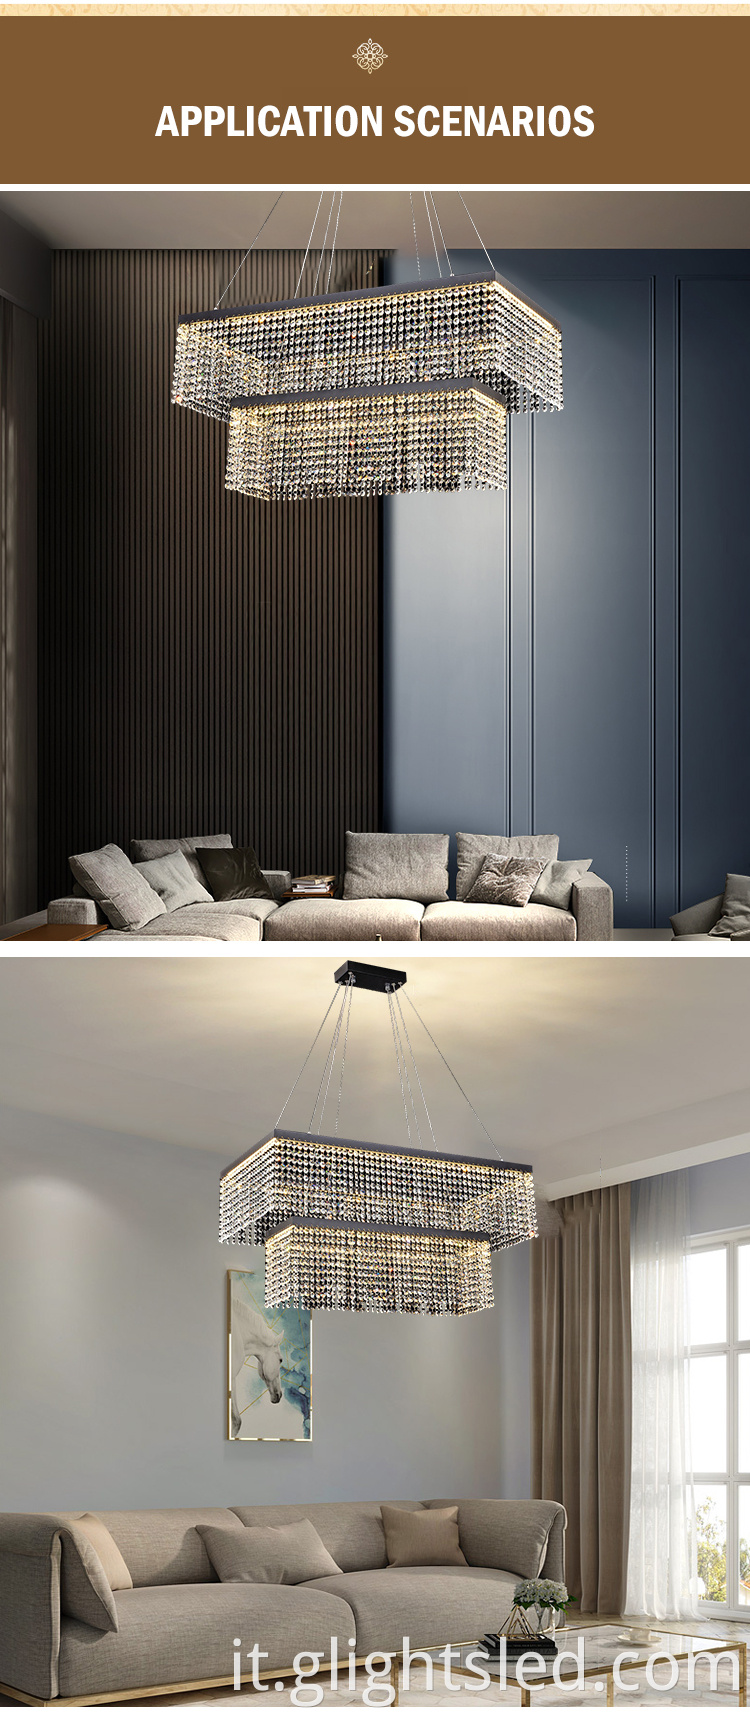 Cinese a buon mercato miglior design hotel di cristallo 3000k 60w quadrati lampadari moderni lampade a sospensione